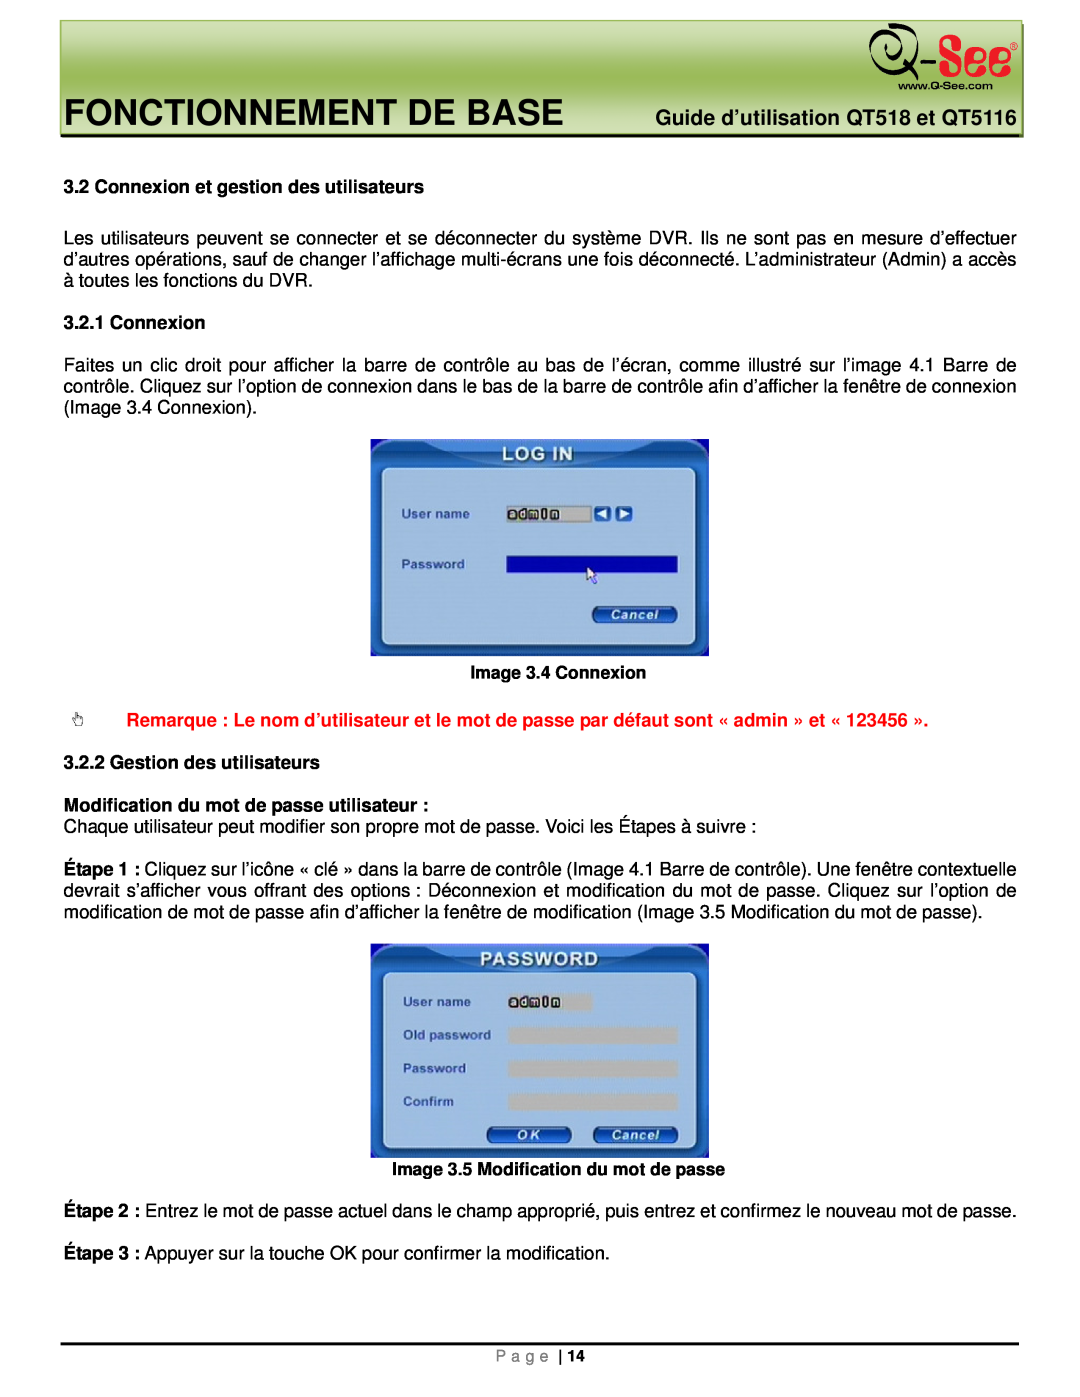 Q-See manual Fonctionnement De Base, Guide d’utilisation QT518 et QT5116, Connexion et gestion des utilisateurs 